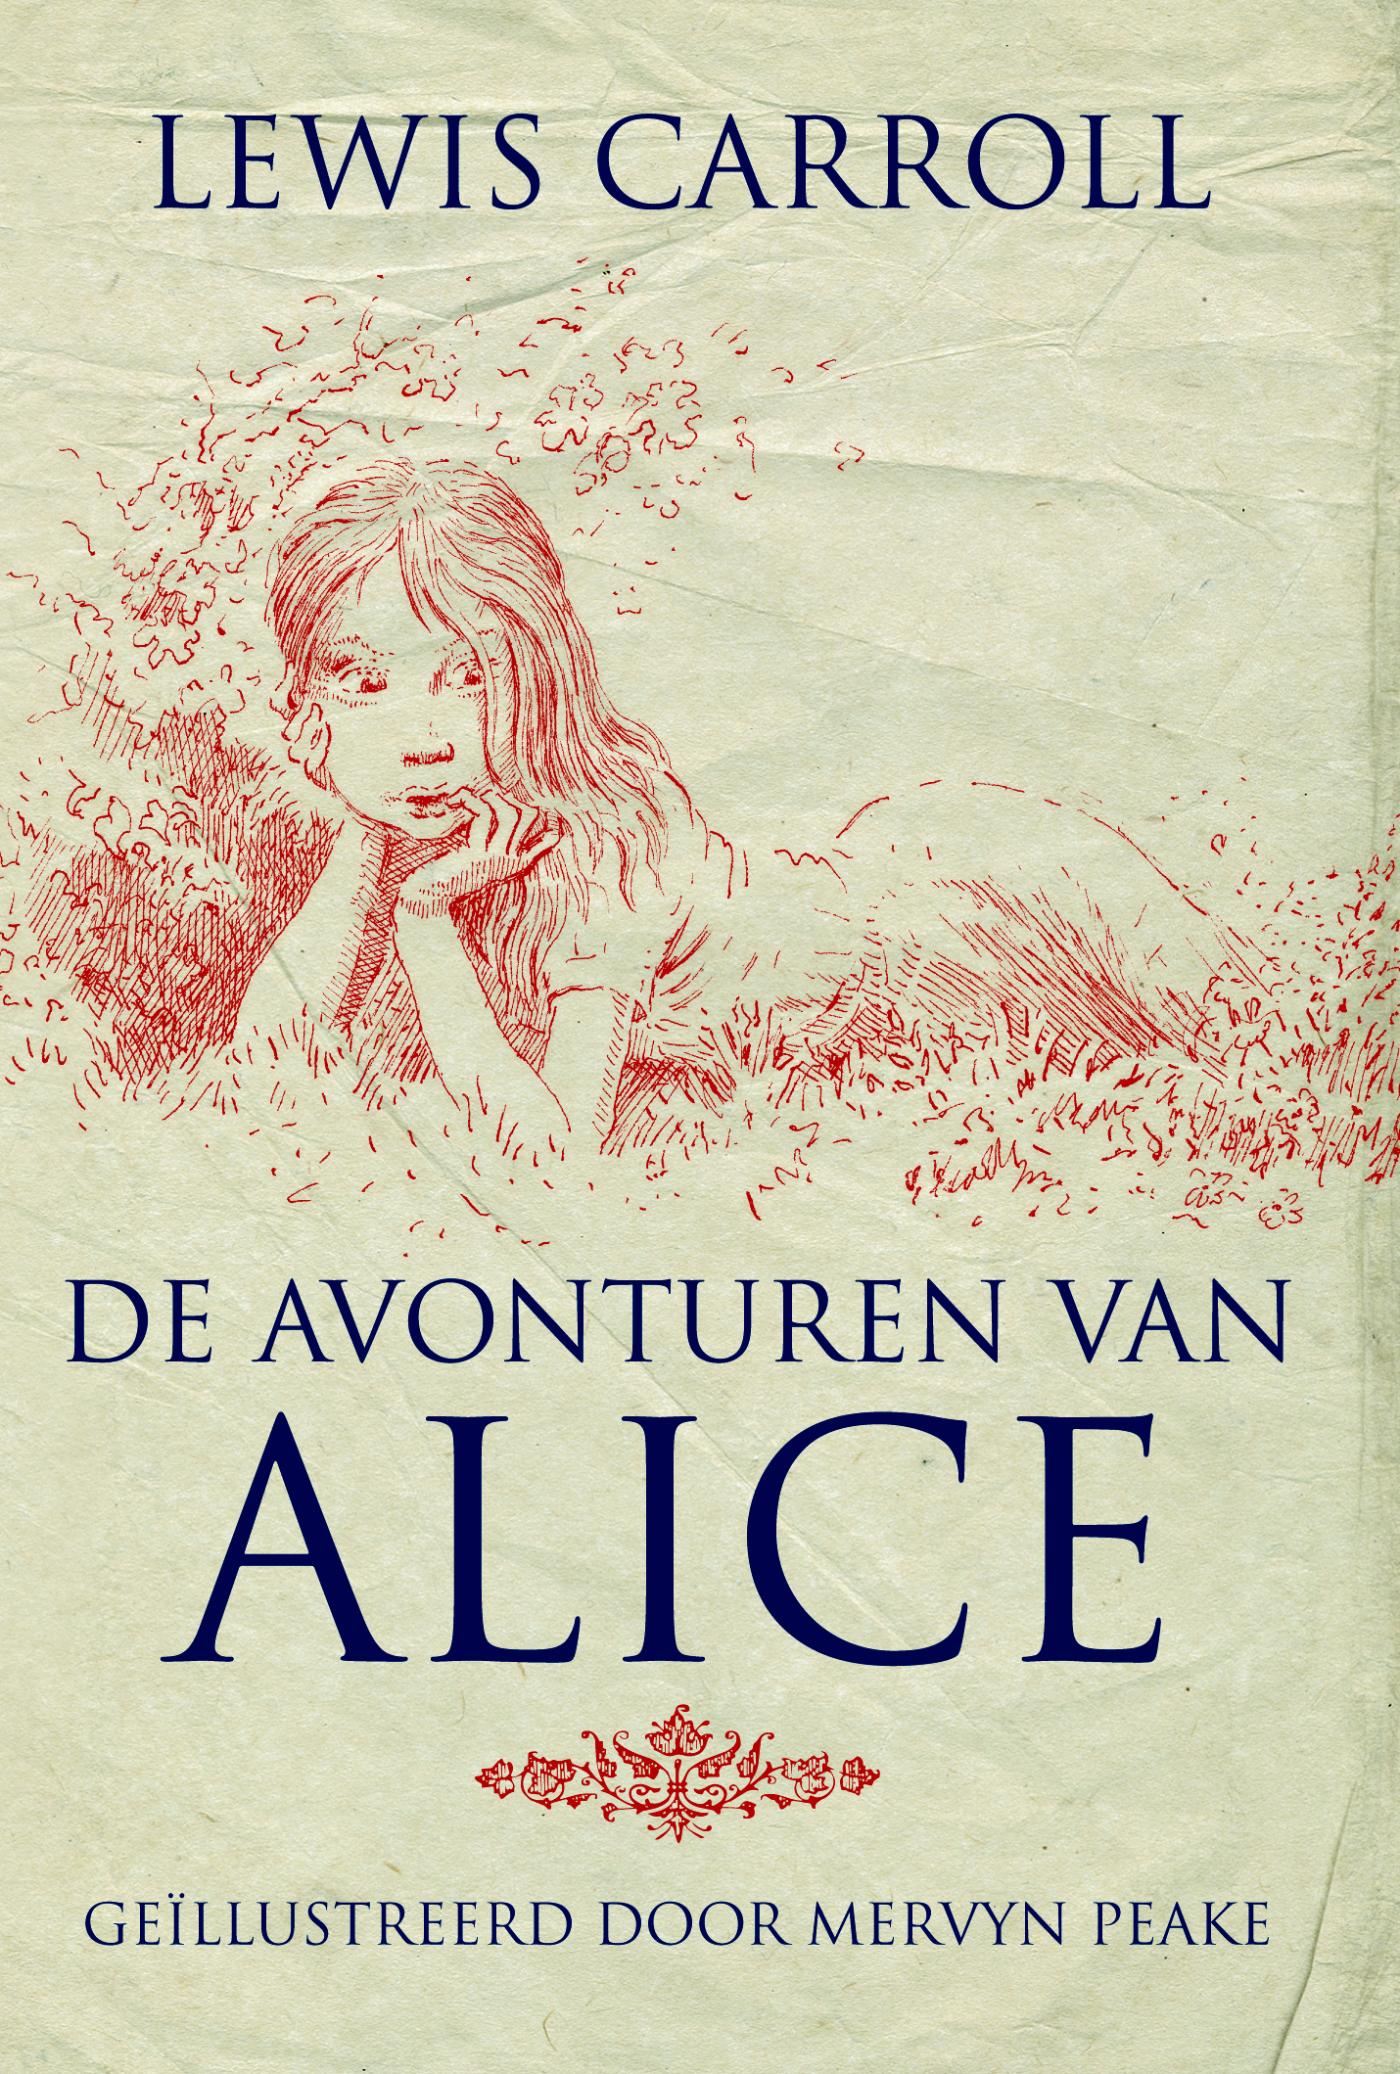 De avonturen van Alice